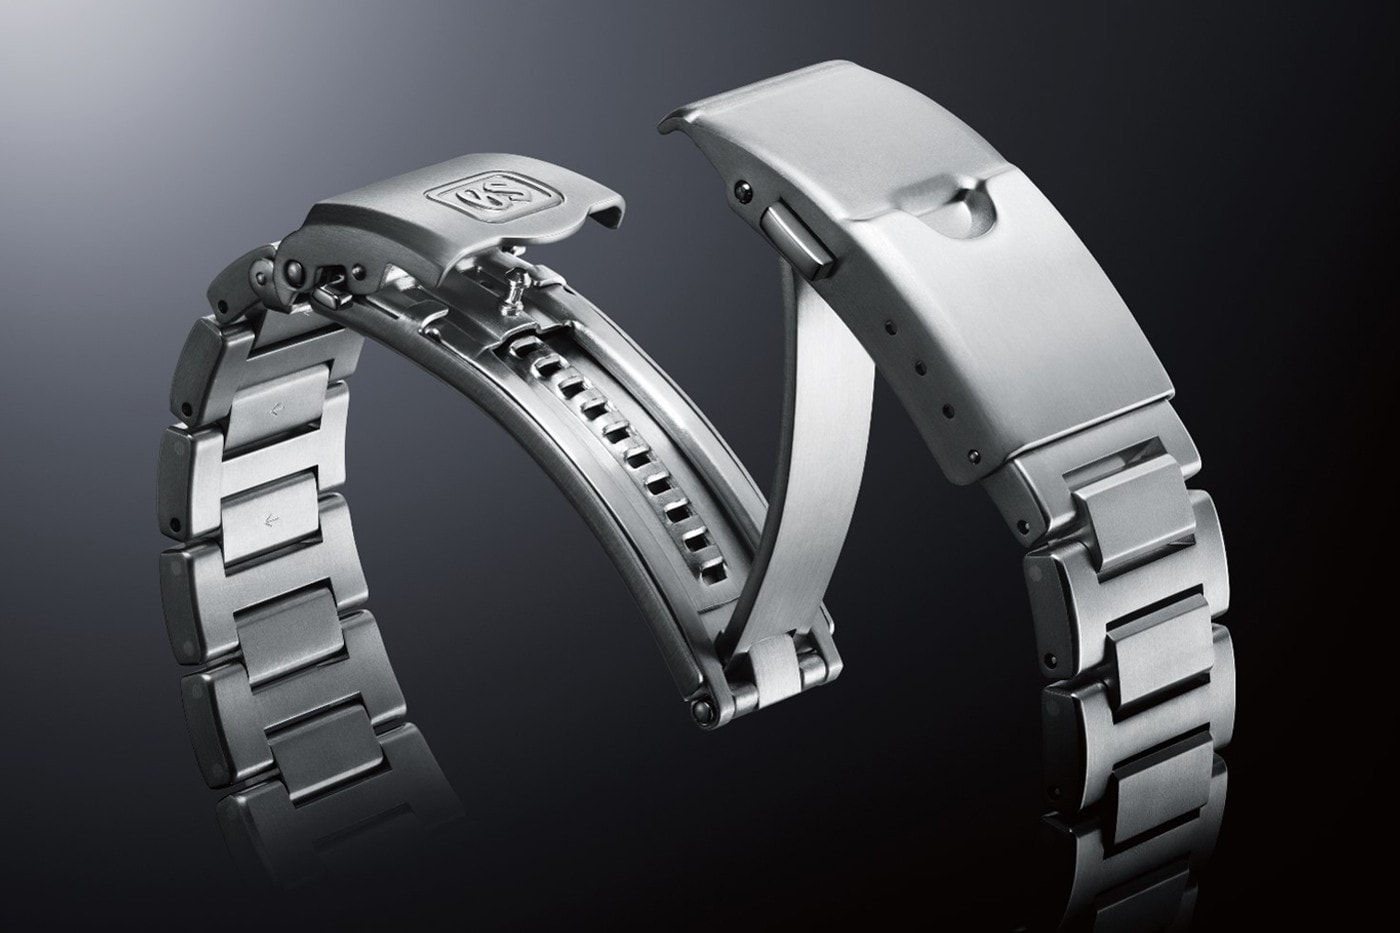 Grand Seiko 推出全新 Spring Drive Chronograph GMT 錶款